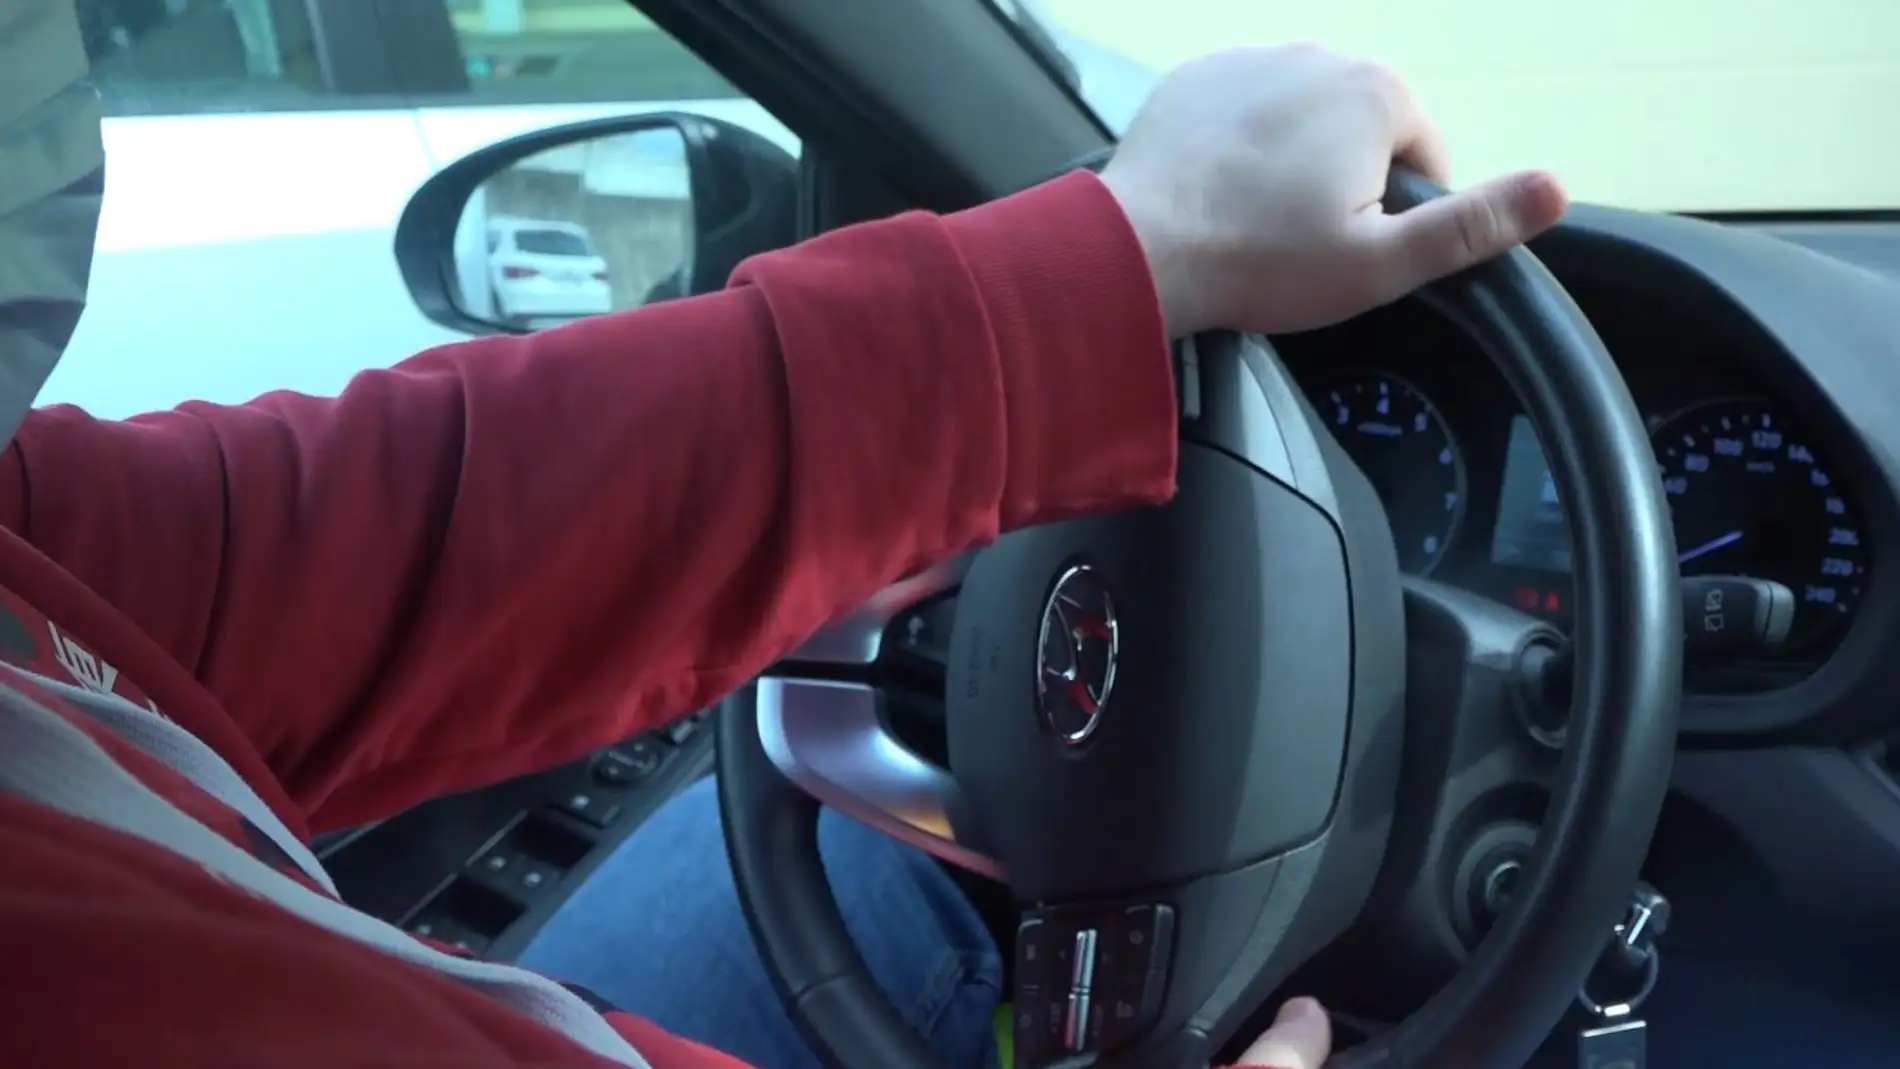 El volante de tu coche hace ruido al girar? Estos son los posibles